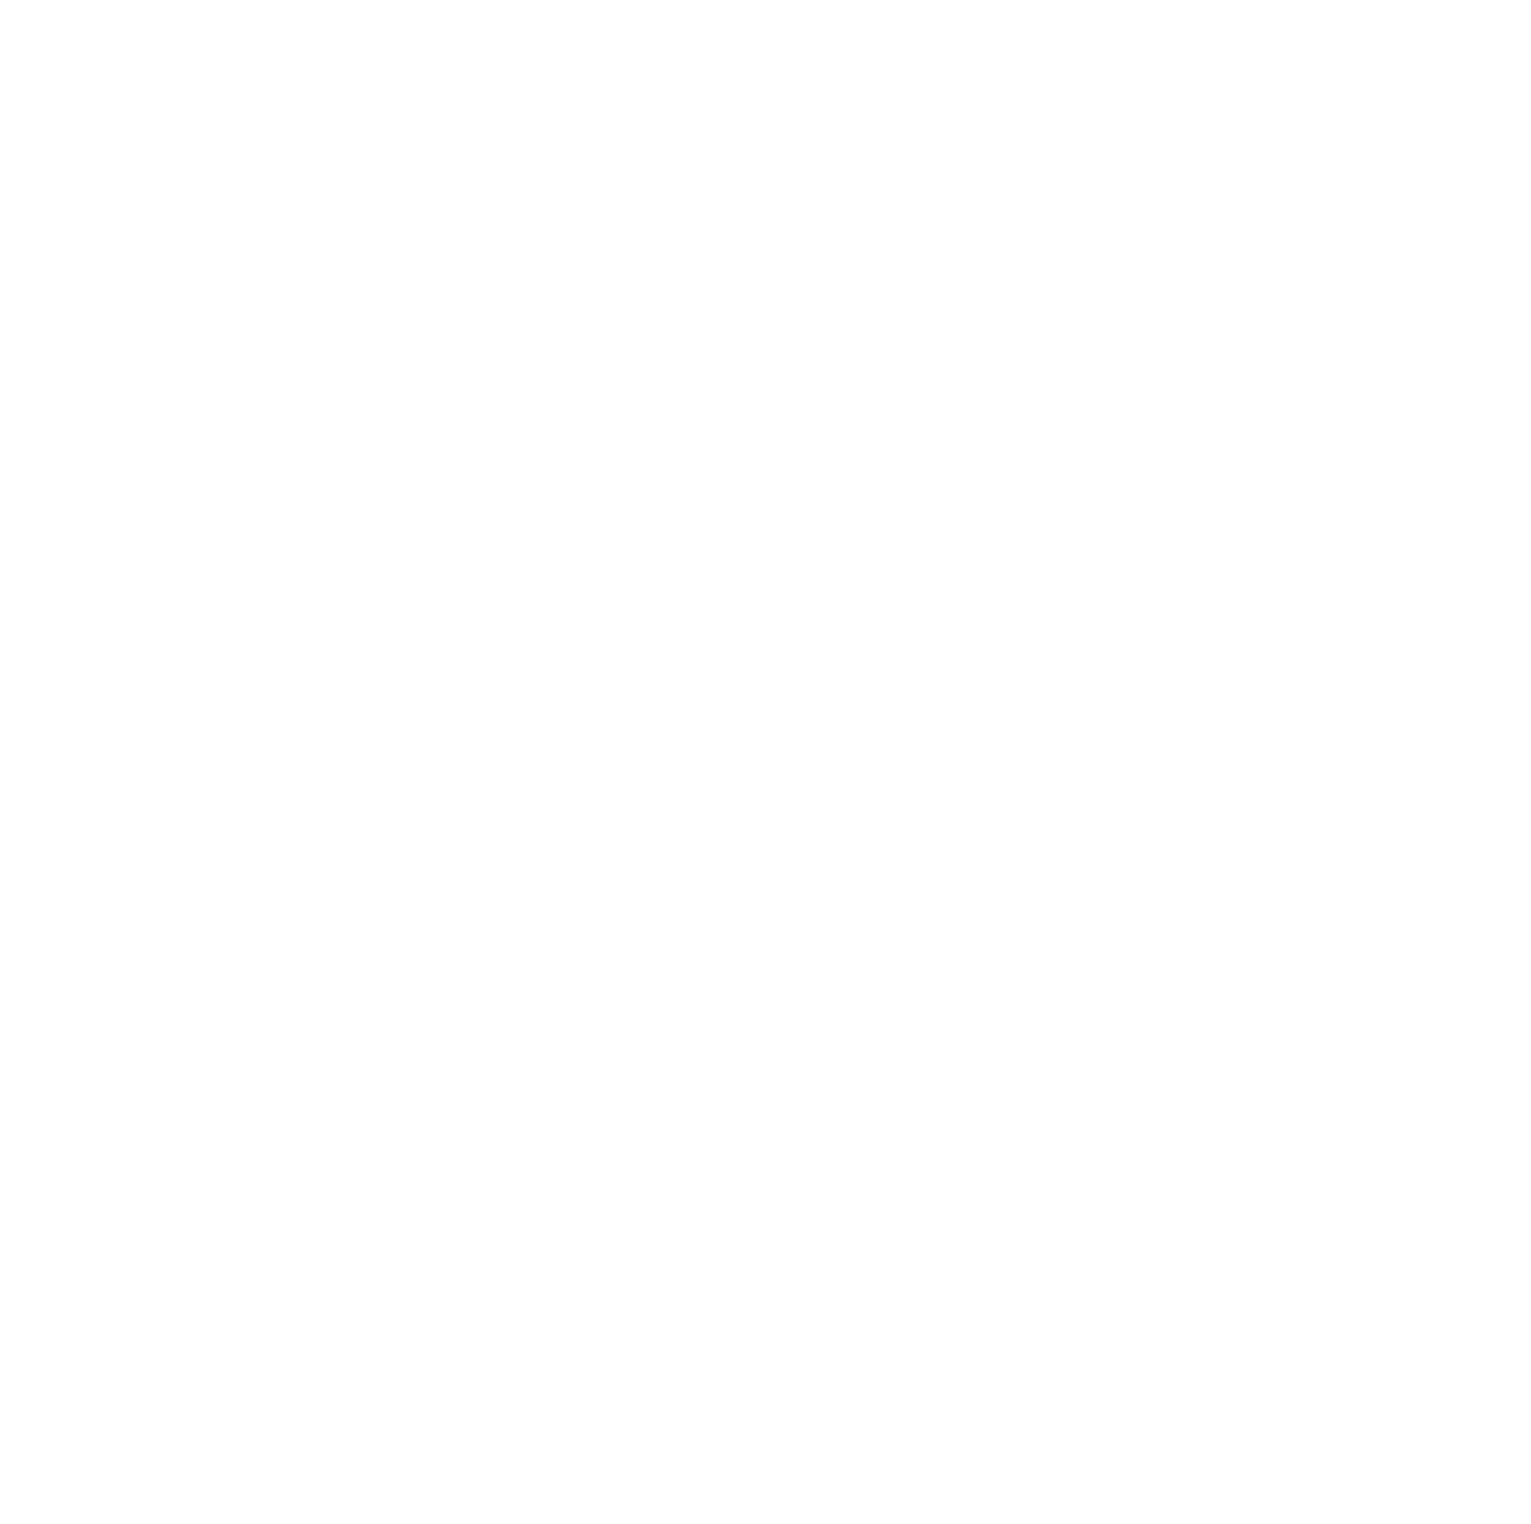 Fabasoft logo for dark backgrounds (transparent PNG)